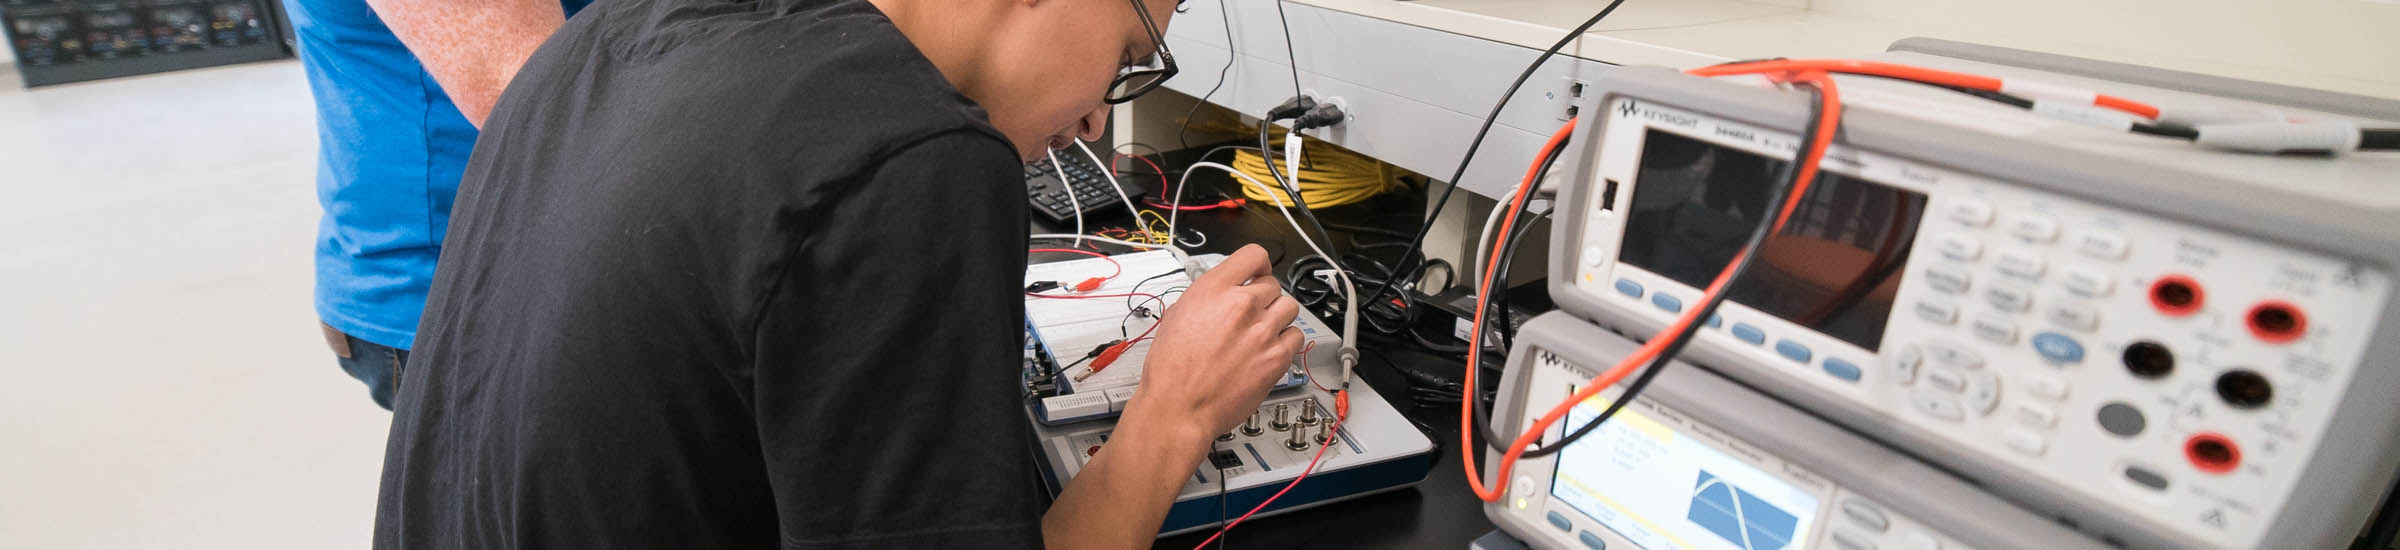 Estudiante realizando investigación en laboratorio de ingeniería eléctrica